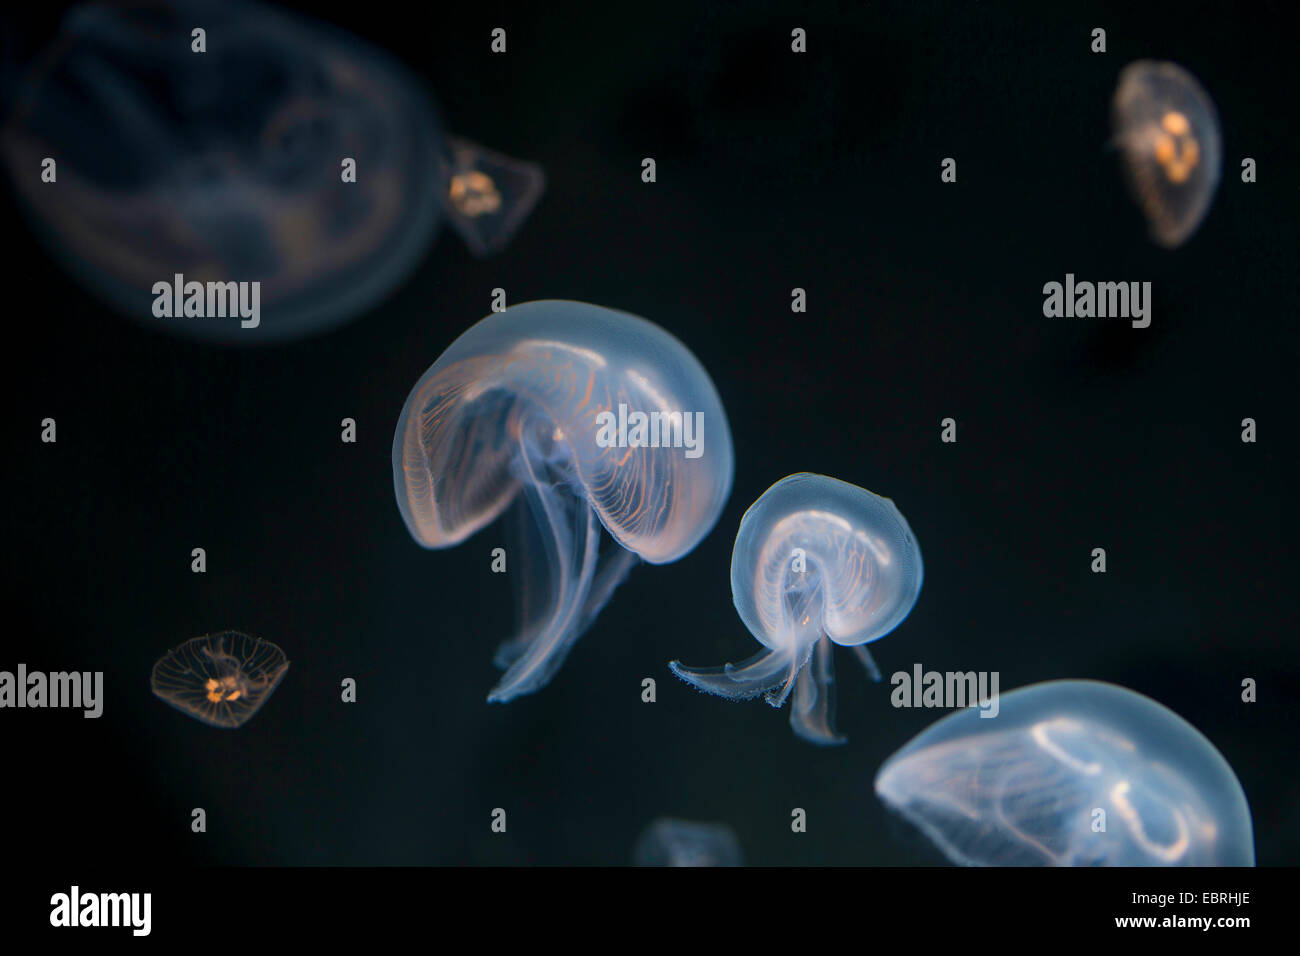 Moon jelly, méduse commune (Aurelia aurita), sous l'eau Banque D'Images